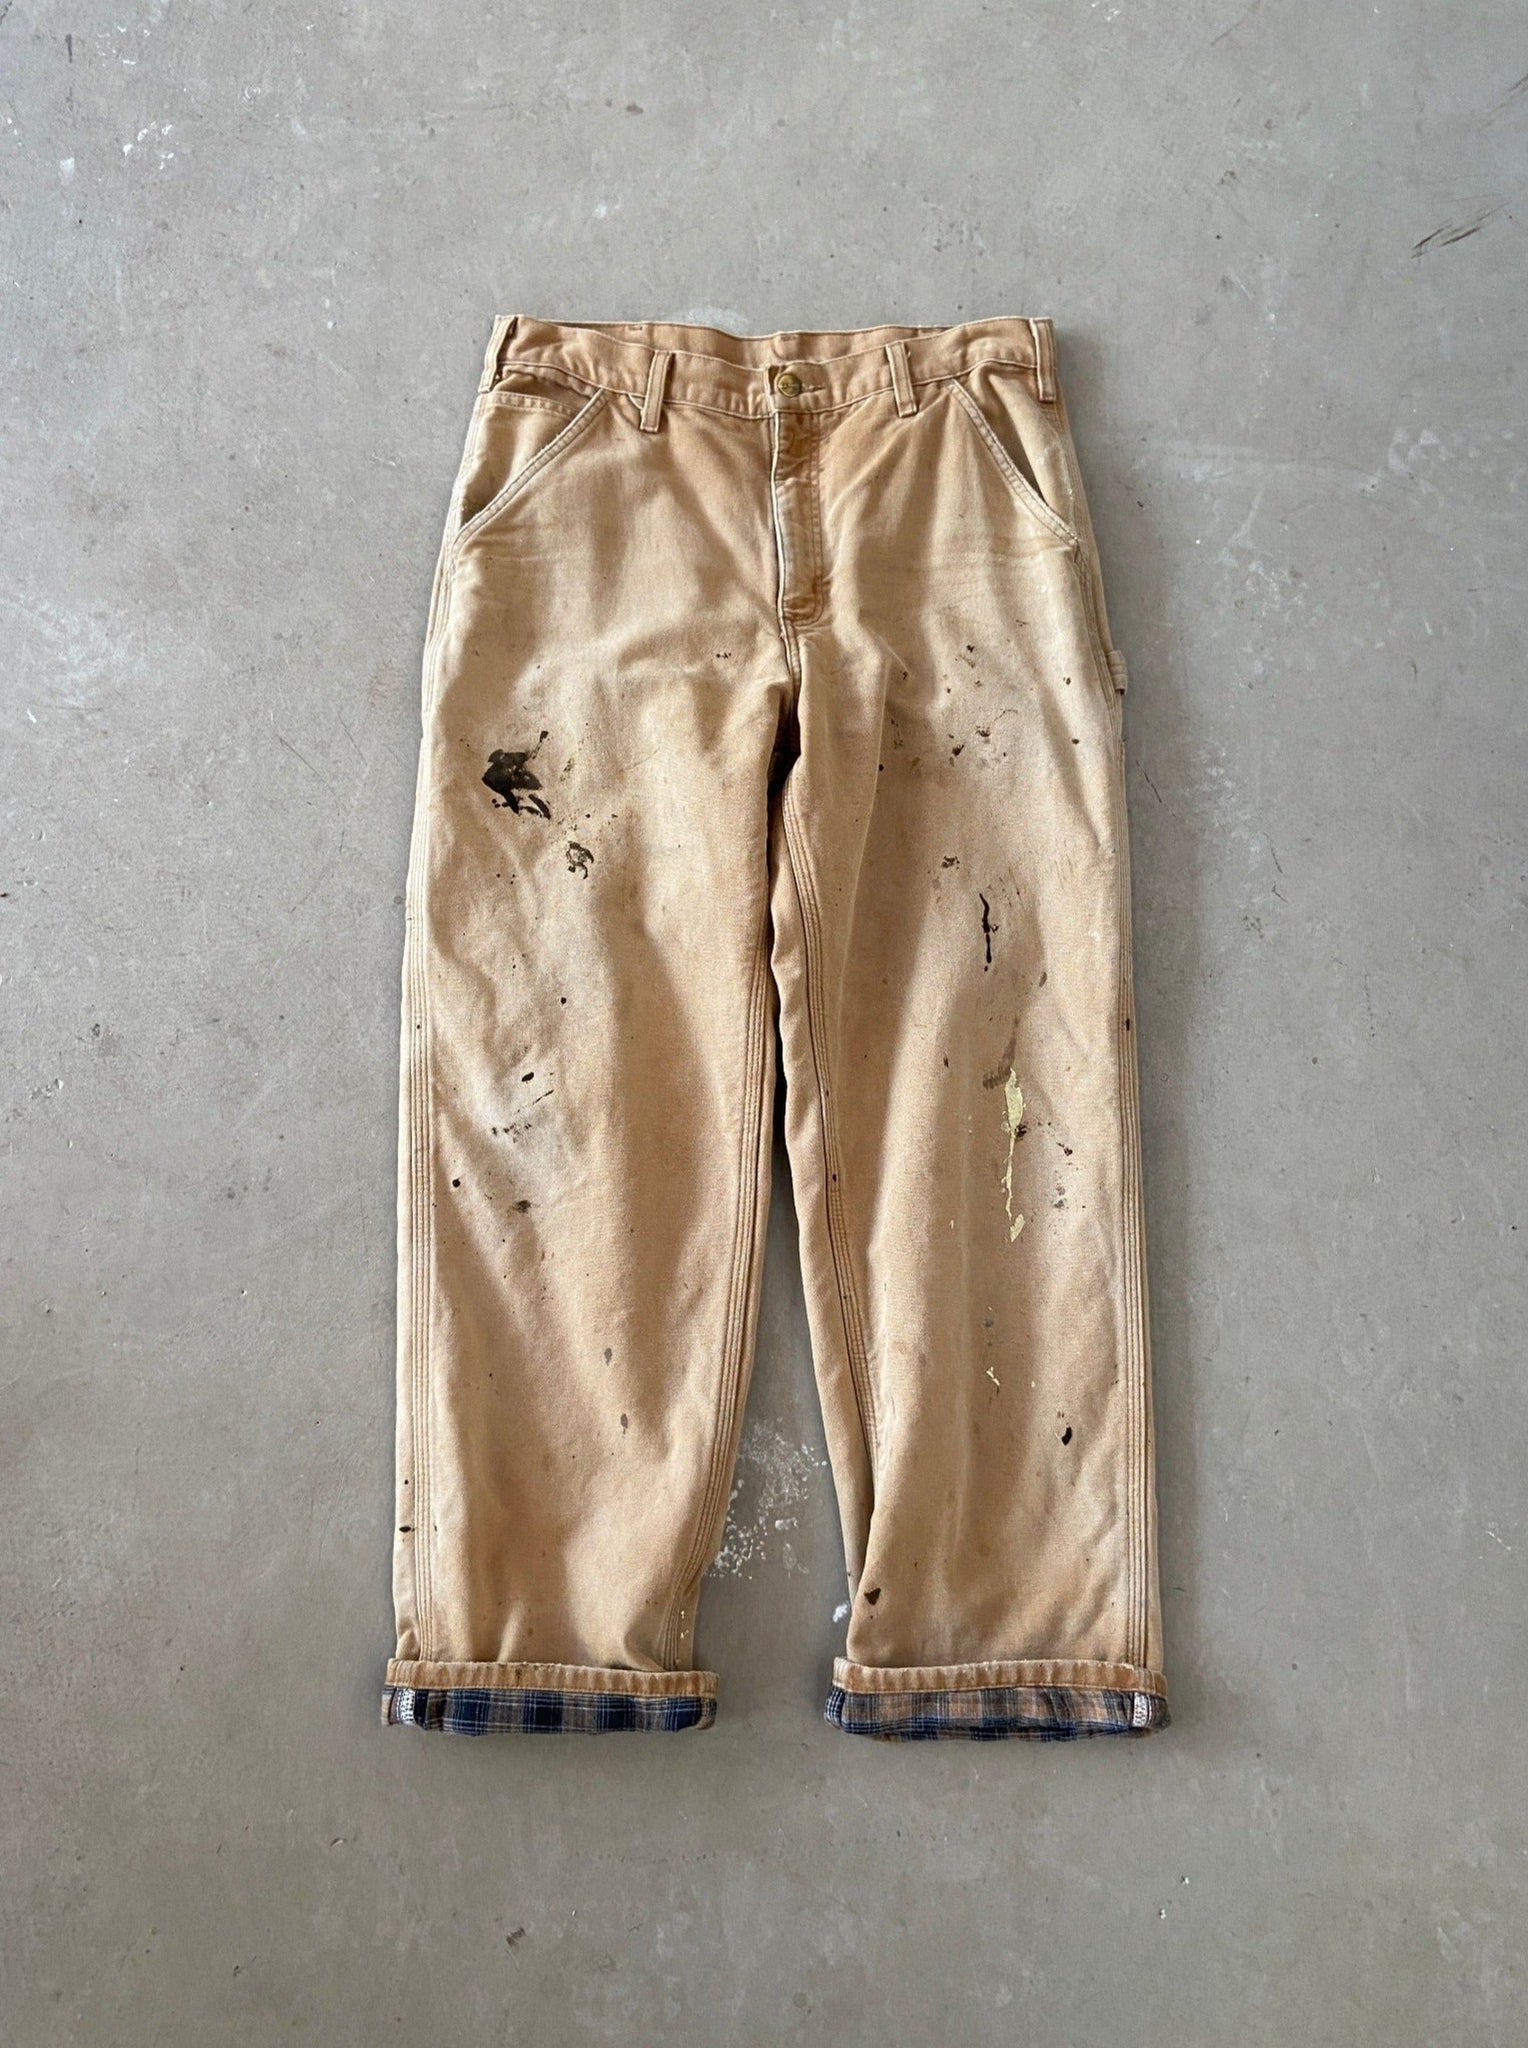 Carhartt Lined Carpenter Pants - 34 x 30